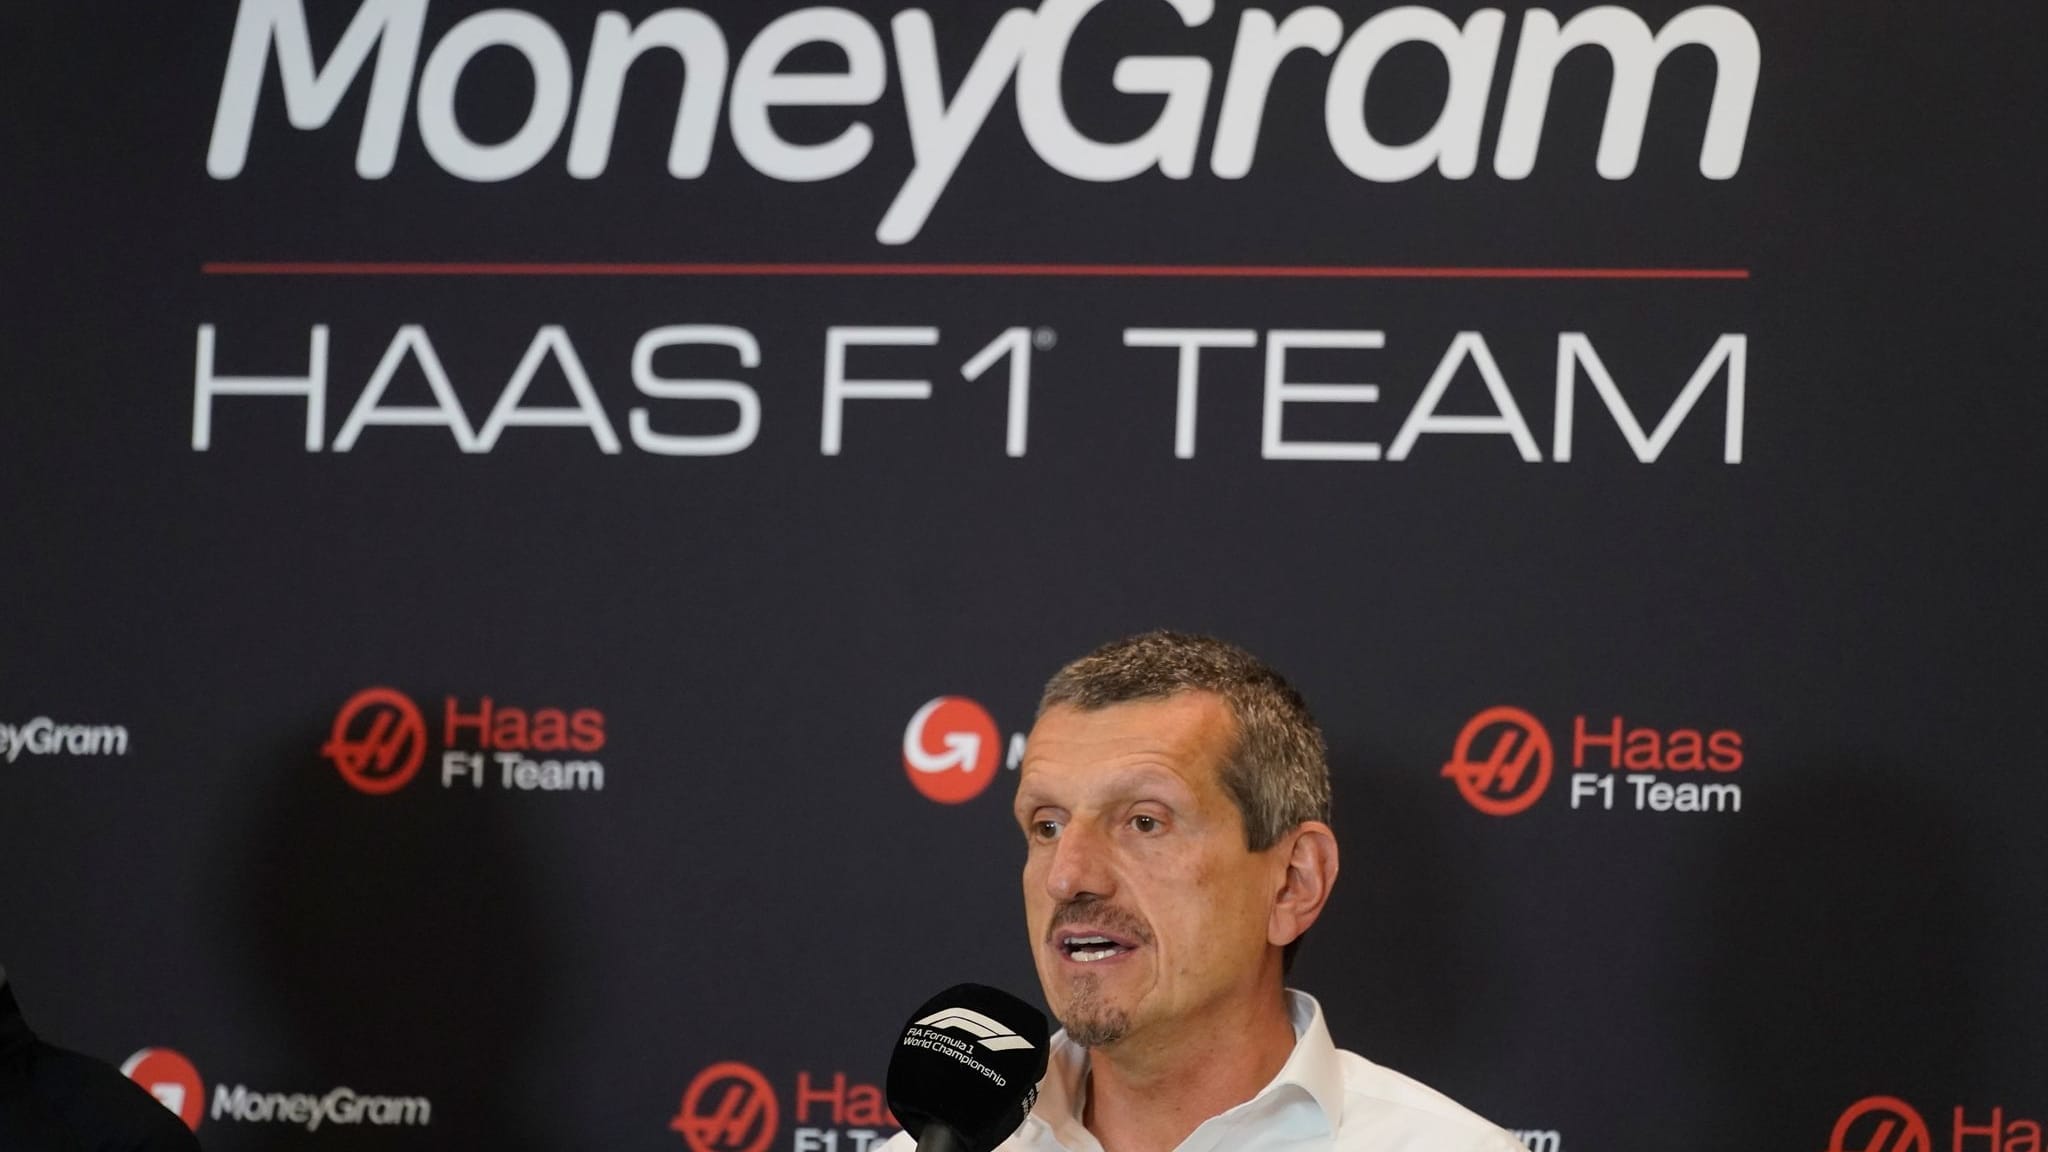 Überraschende Trennung: Steiner kein Haas-Teamchef mehr